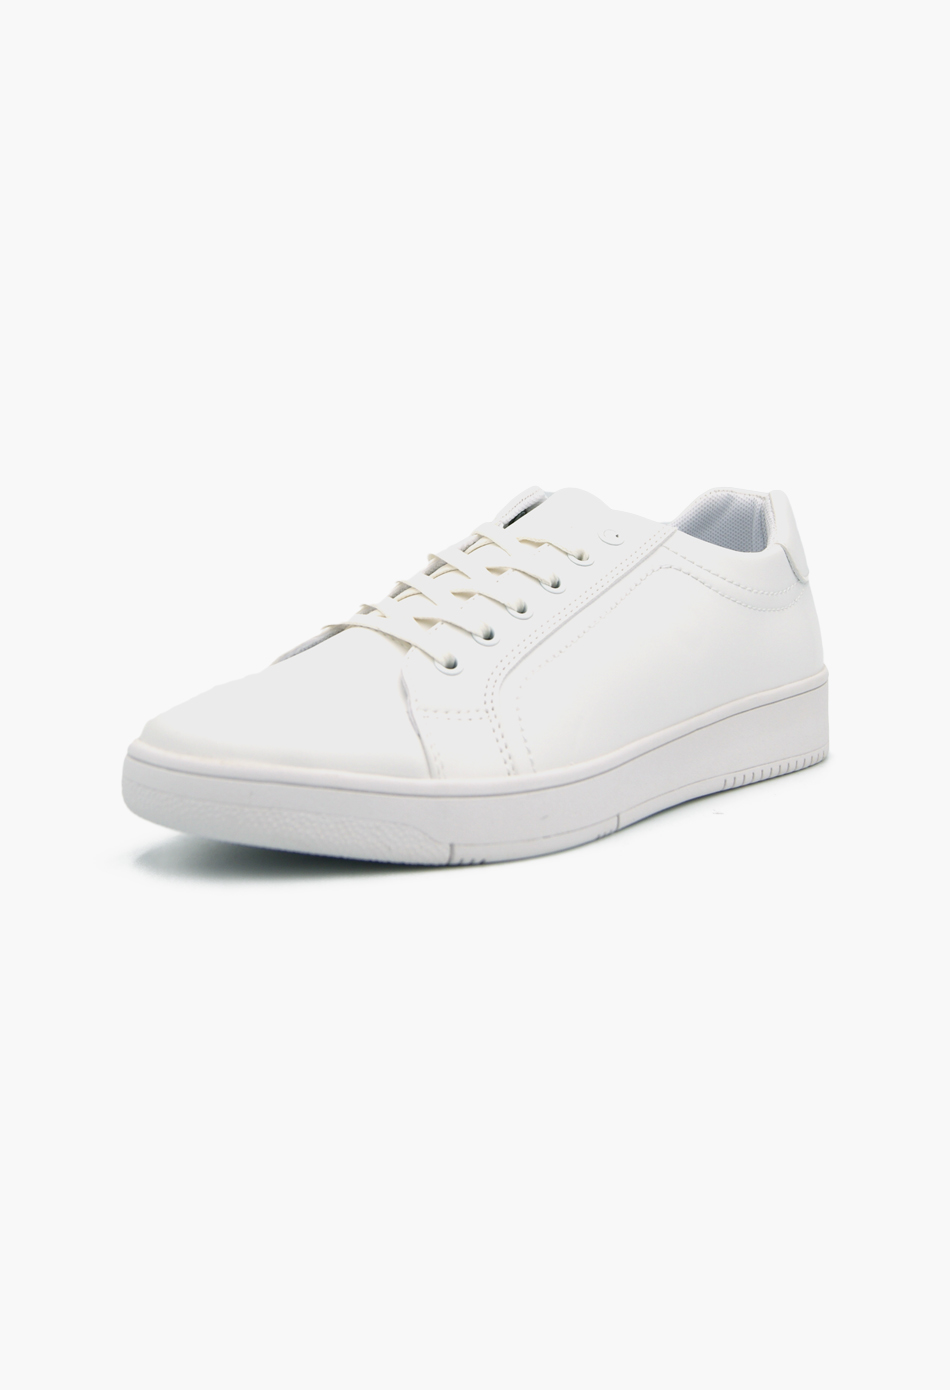 Ανδρικά Casual Sneakers Λευκό / L22210-white ΑΘΛΗΤΙΚΑ & SNEAKERS joya.gr